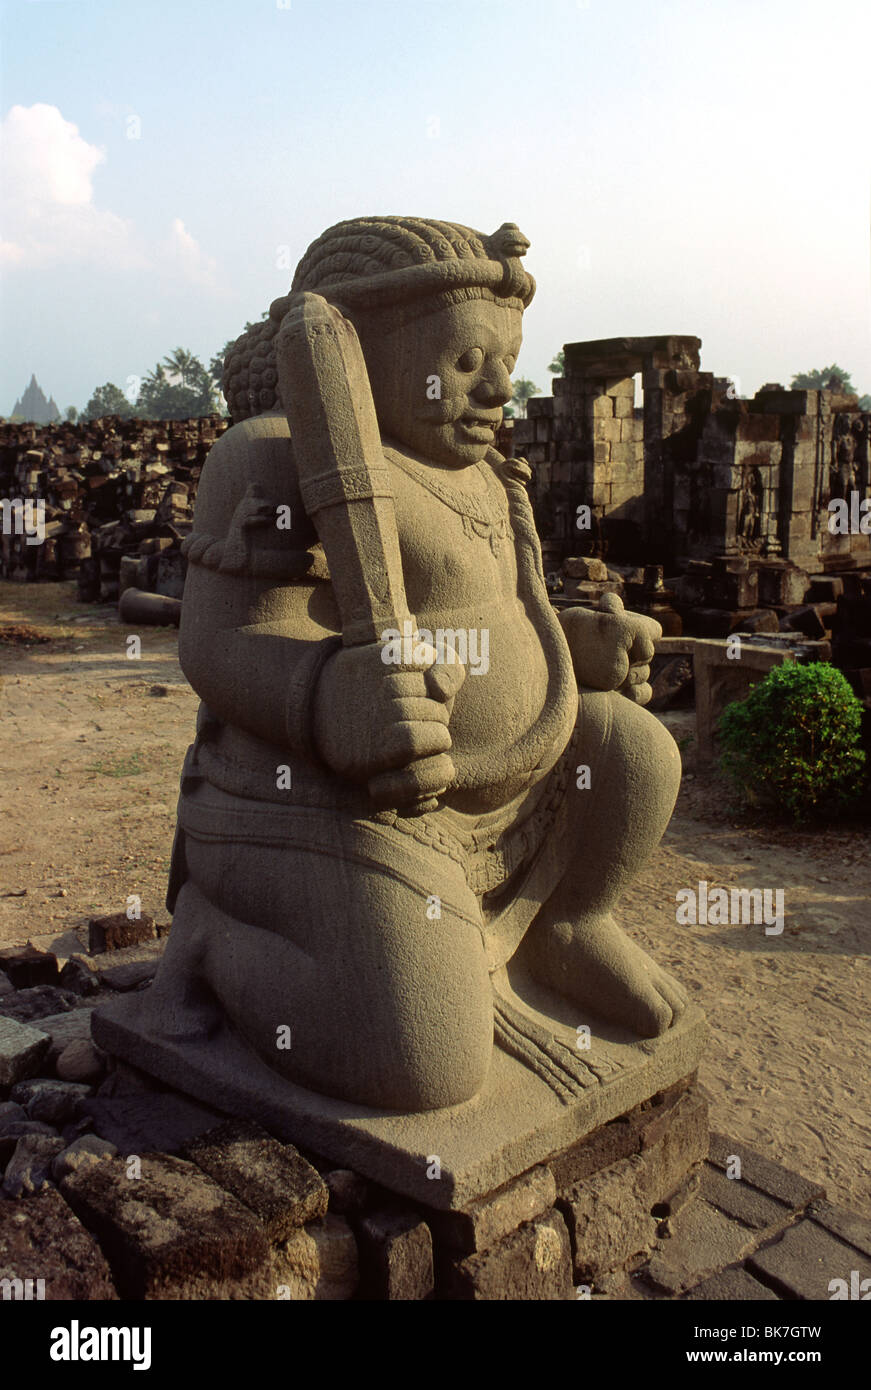 Wächter-Statue an den Tempel von Candi Sewu, nordwestlich von Yogyakarta, Java, Indonesien, Südostasien, Asien Stockfoto